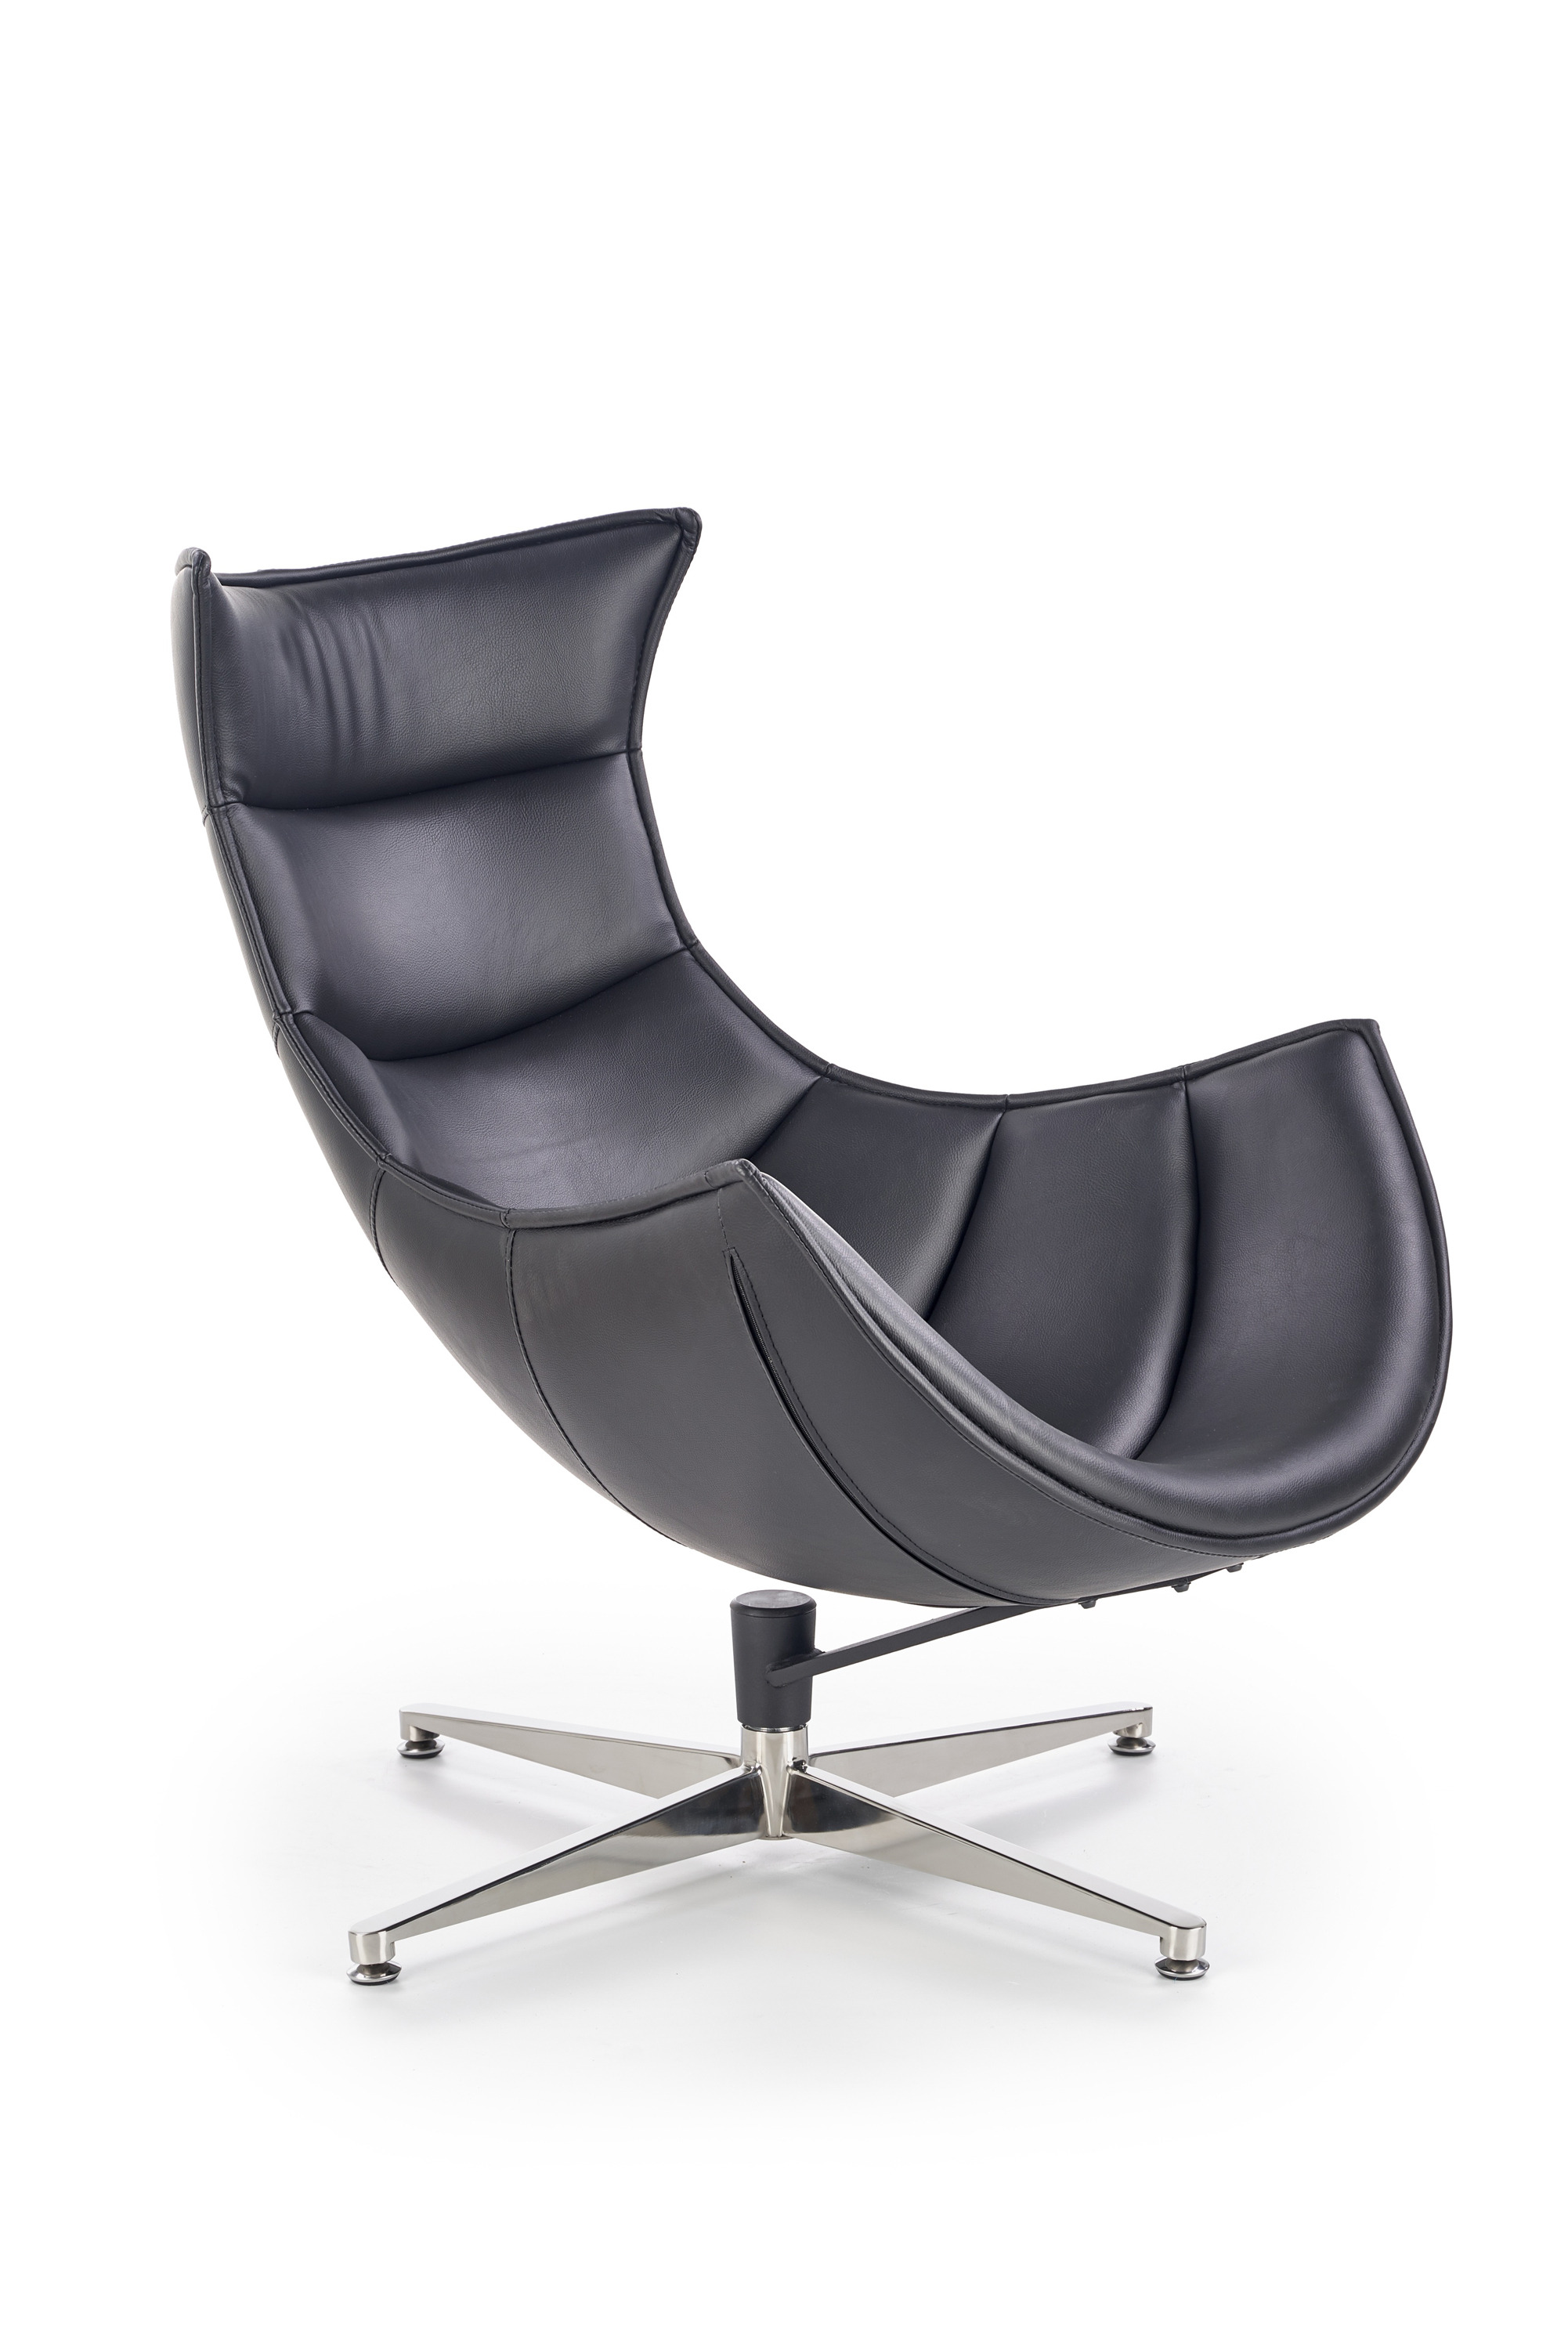 Luksusowy fotel wypoczynkowy LUXOR - czarny nowoczesny fotel 